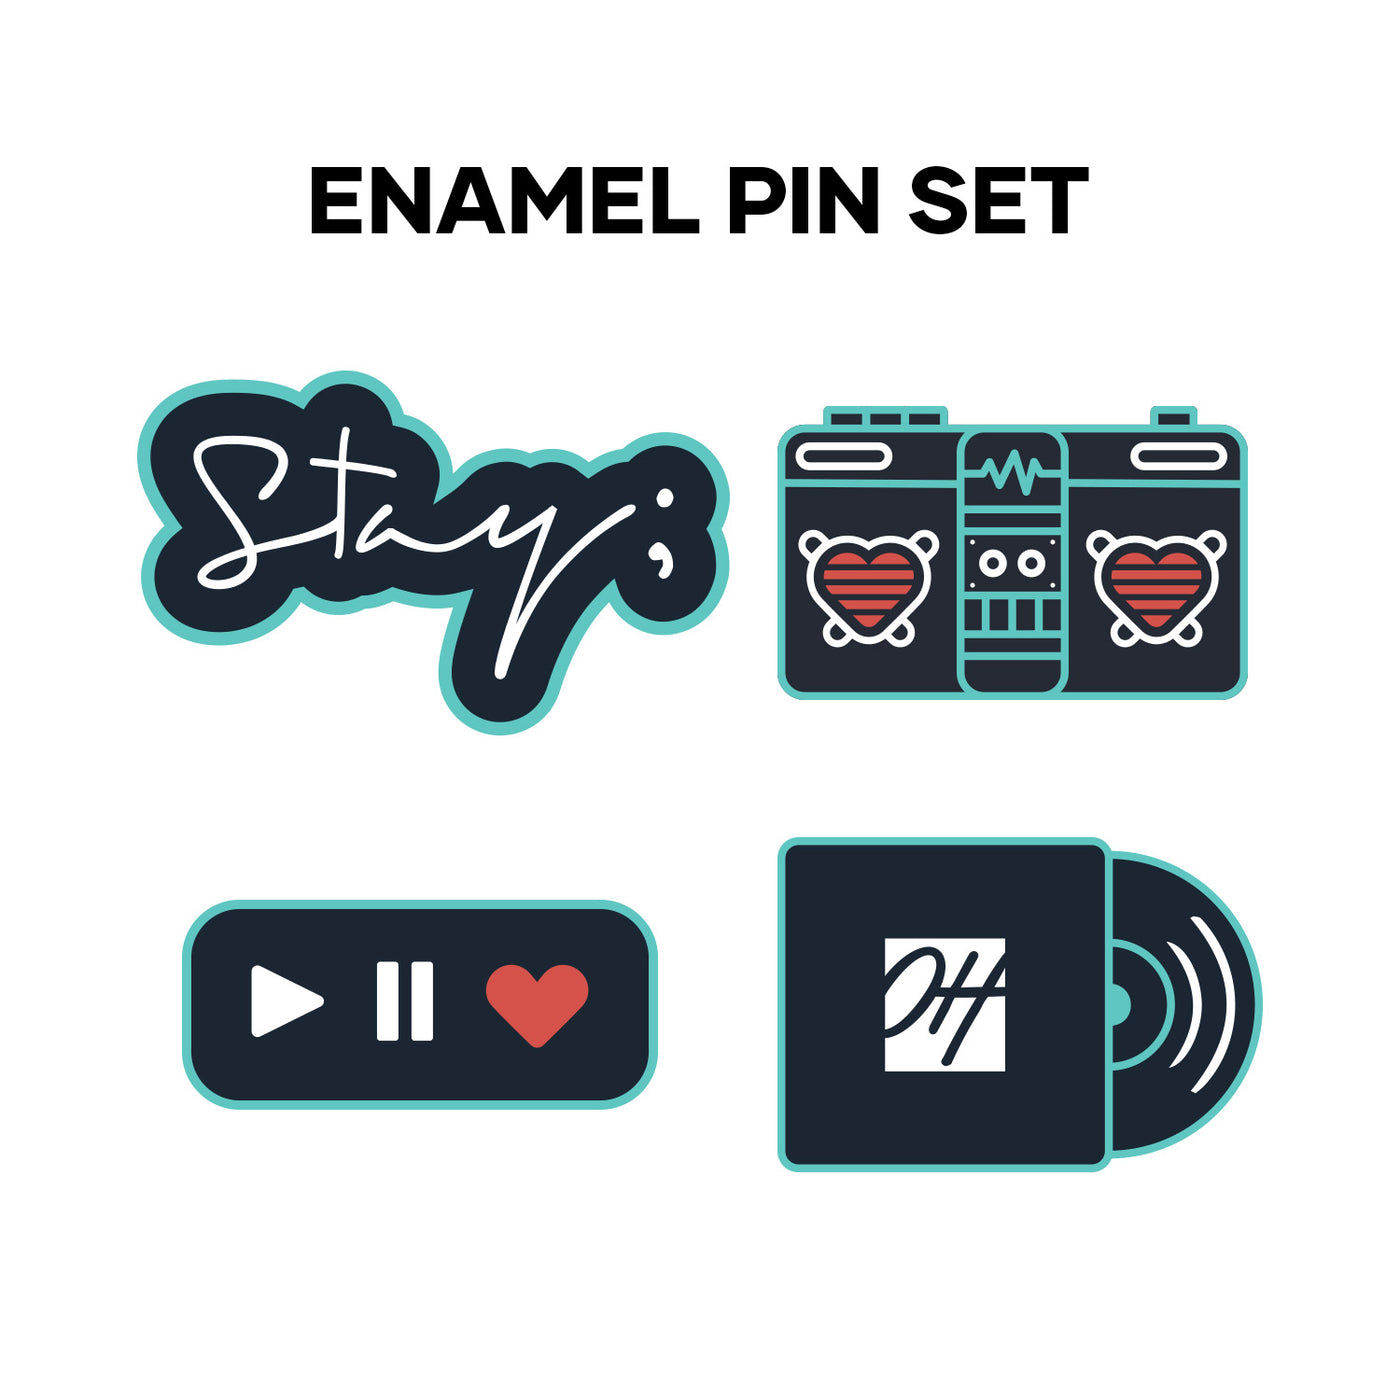 Stay; 2020 Enamel Pin Set